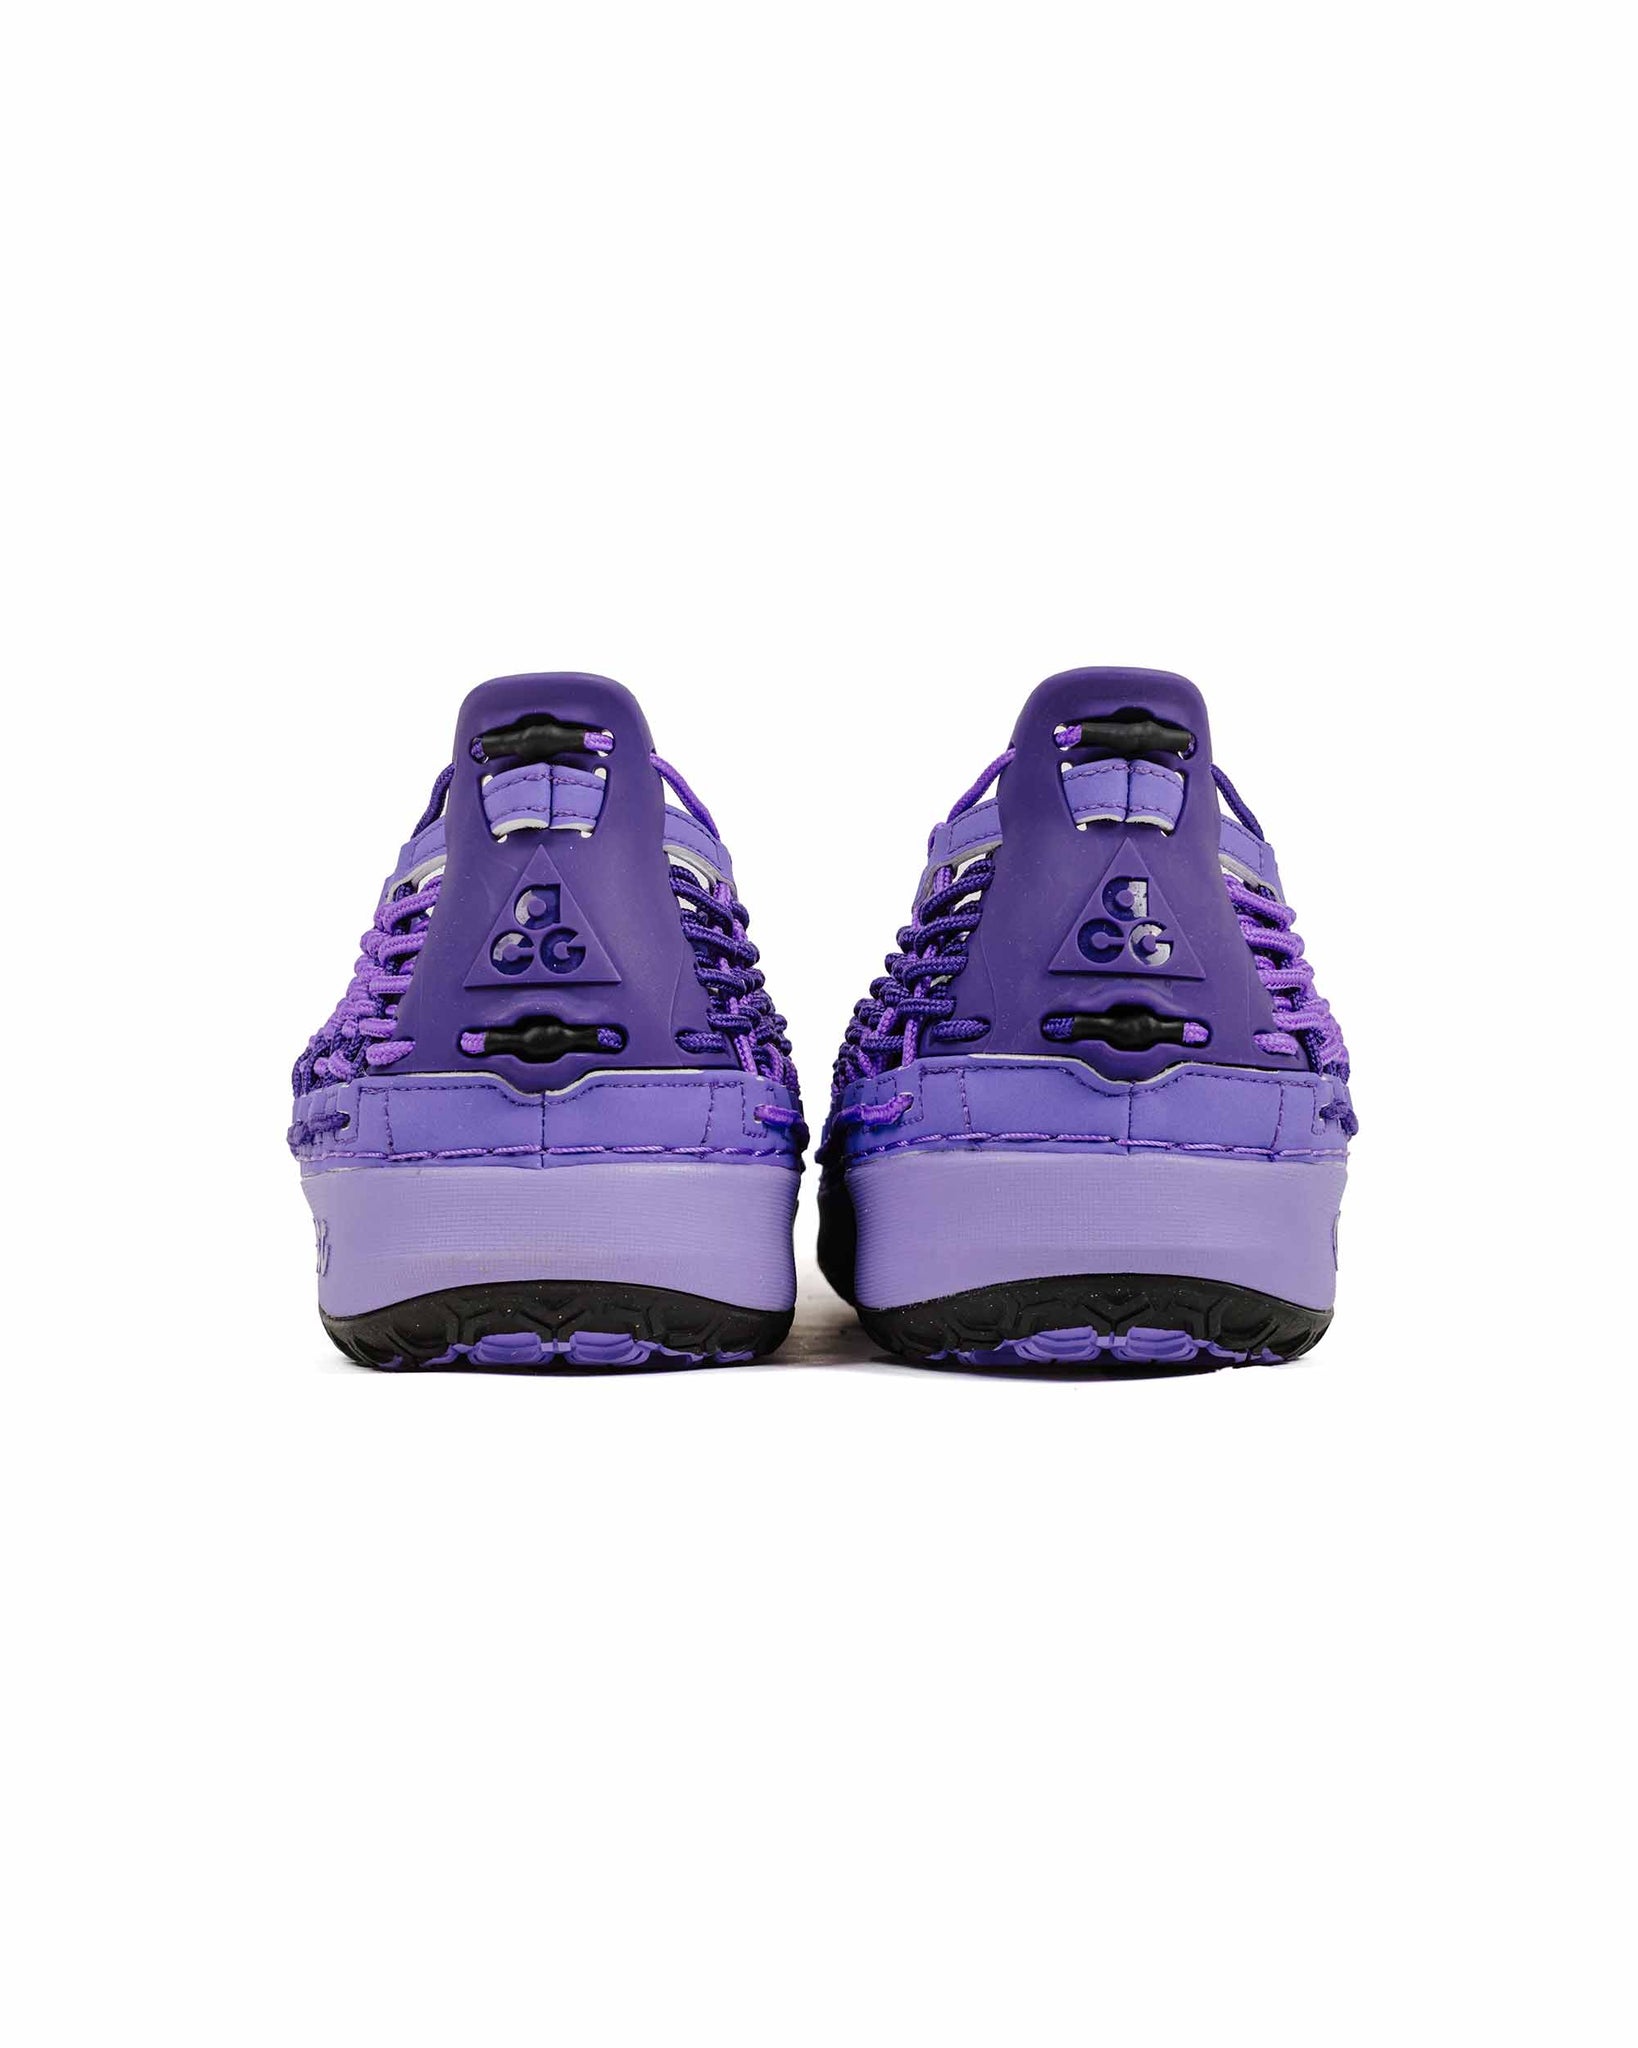 Nike ACG Watercat+ Court Purple Rear